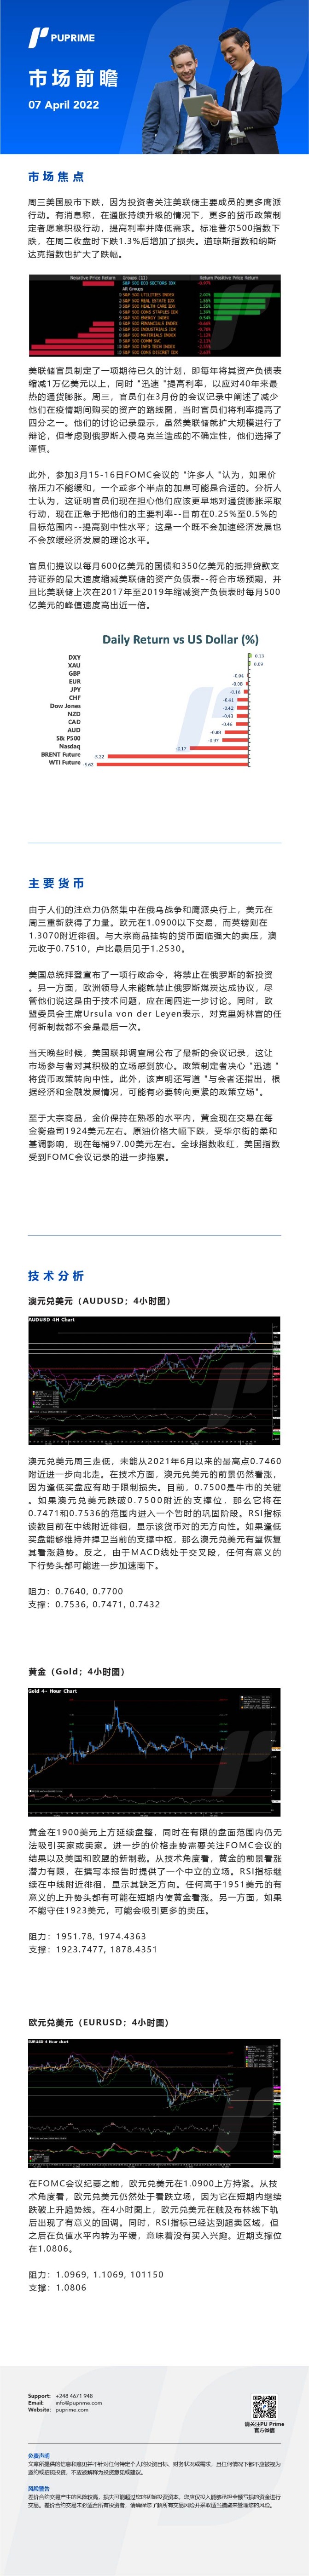 07042022 Daily Market Analysis__CHN.jpg